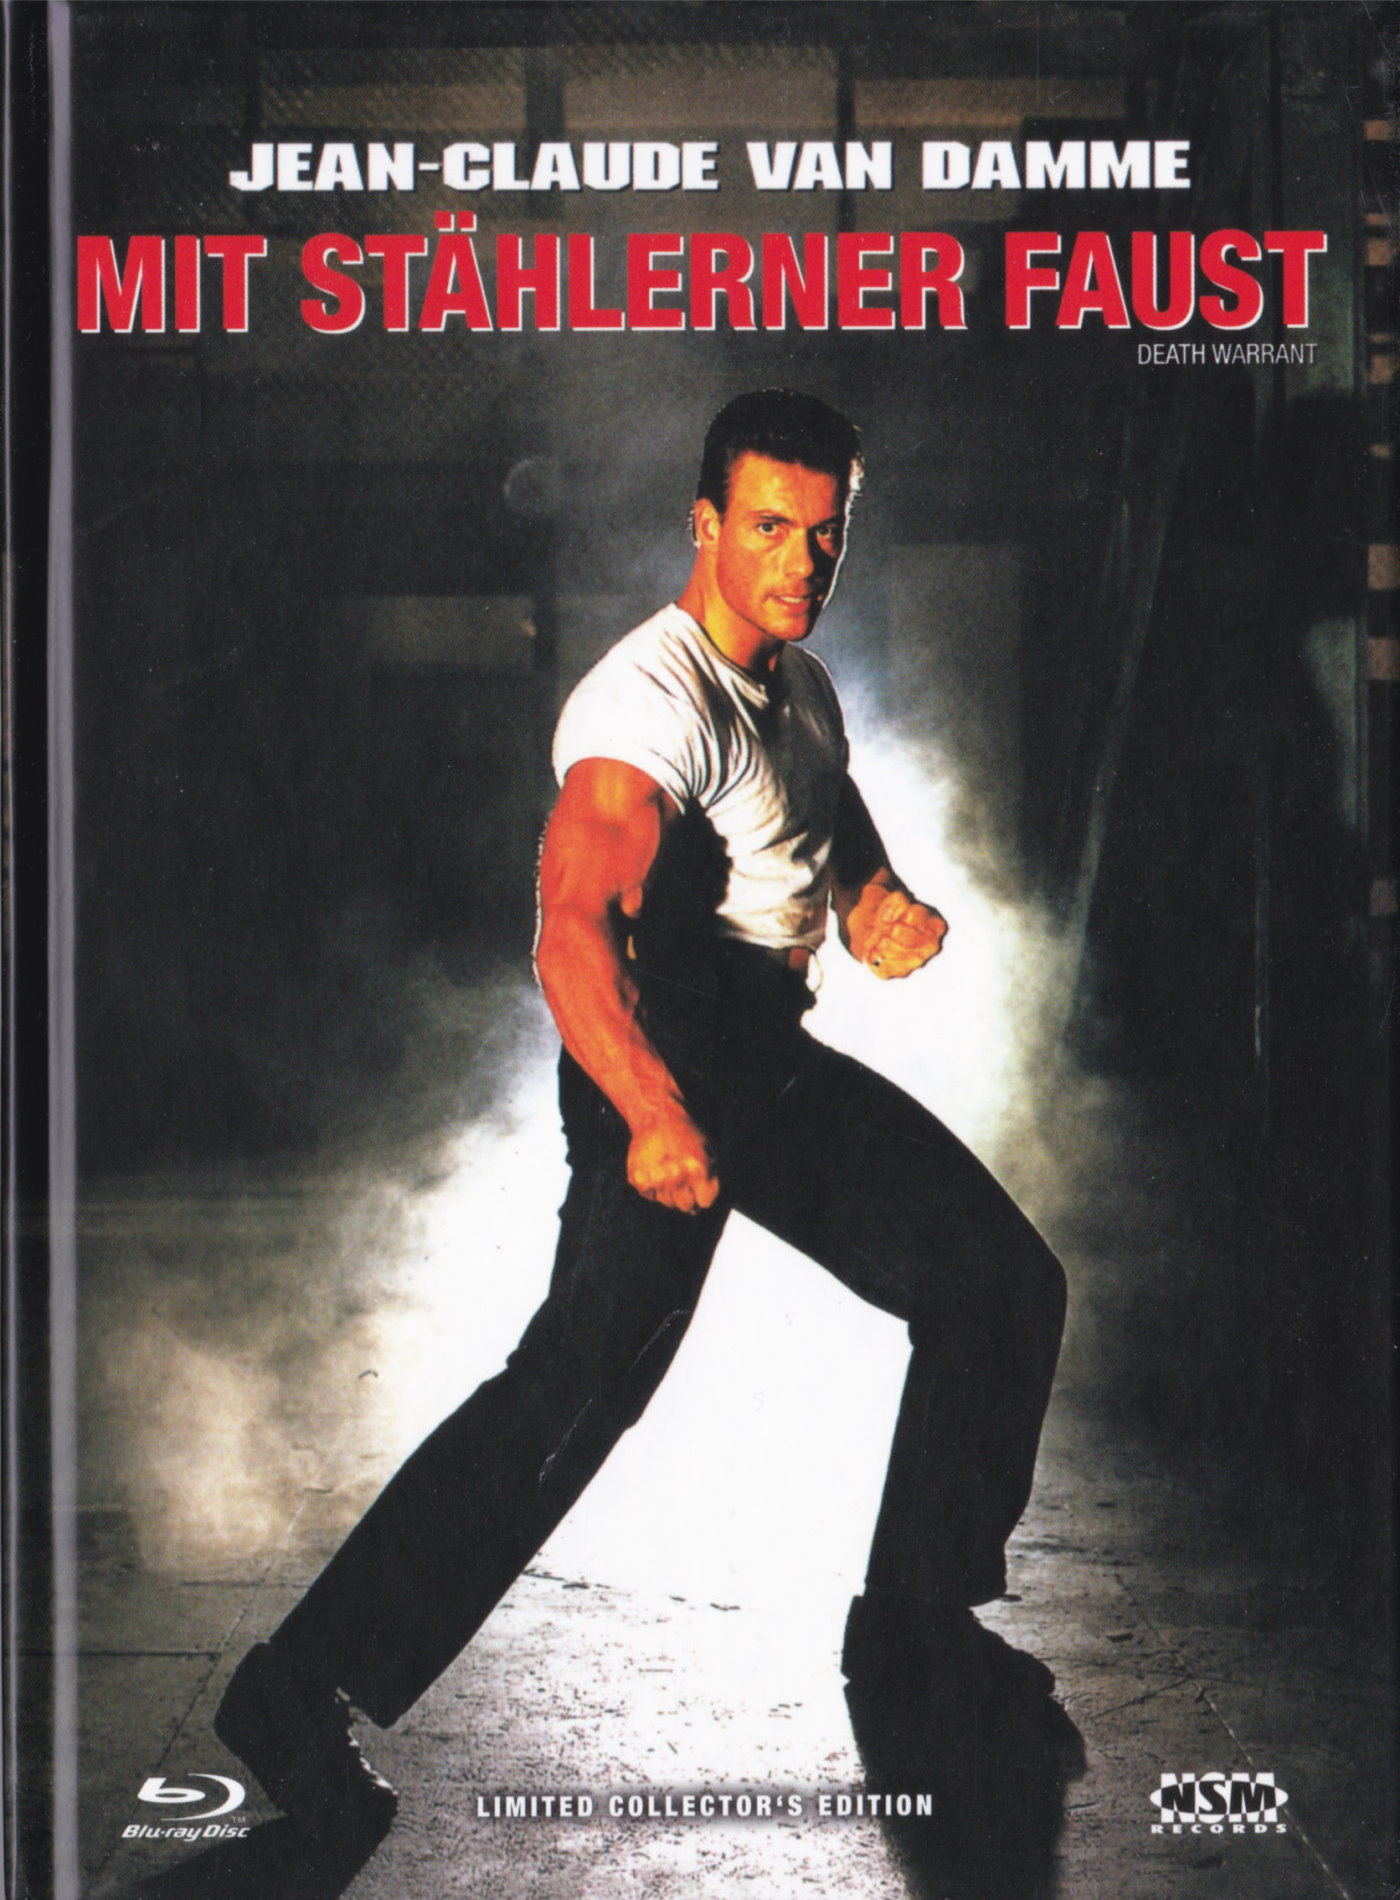 Cover - Mit stählerner Faust.jpg